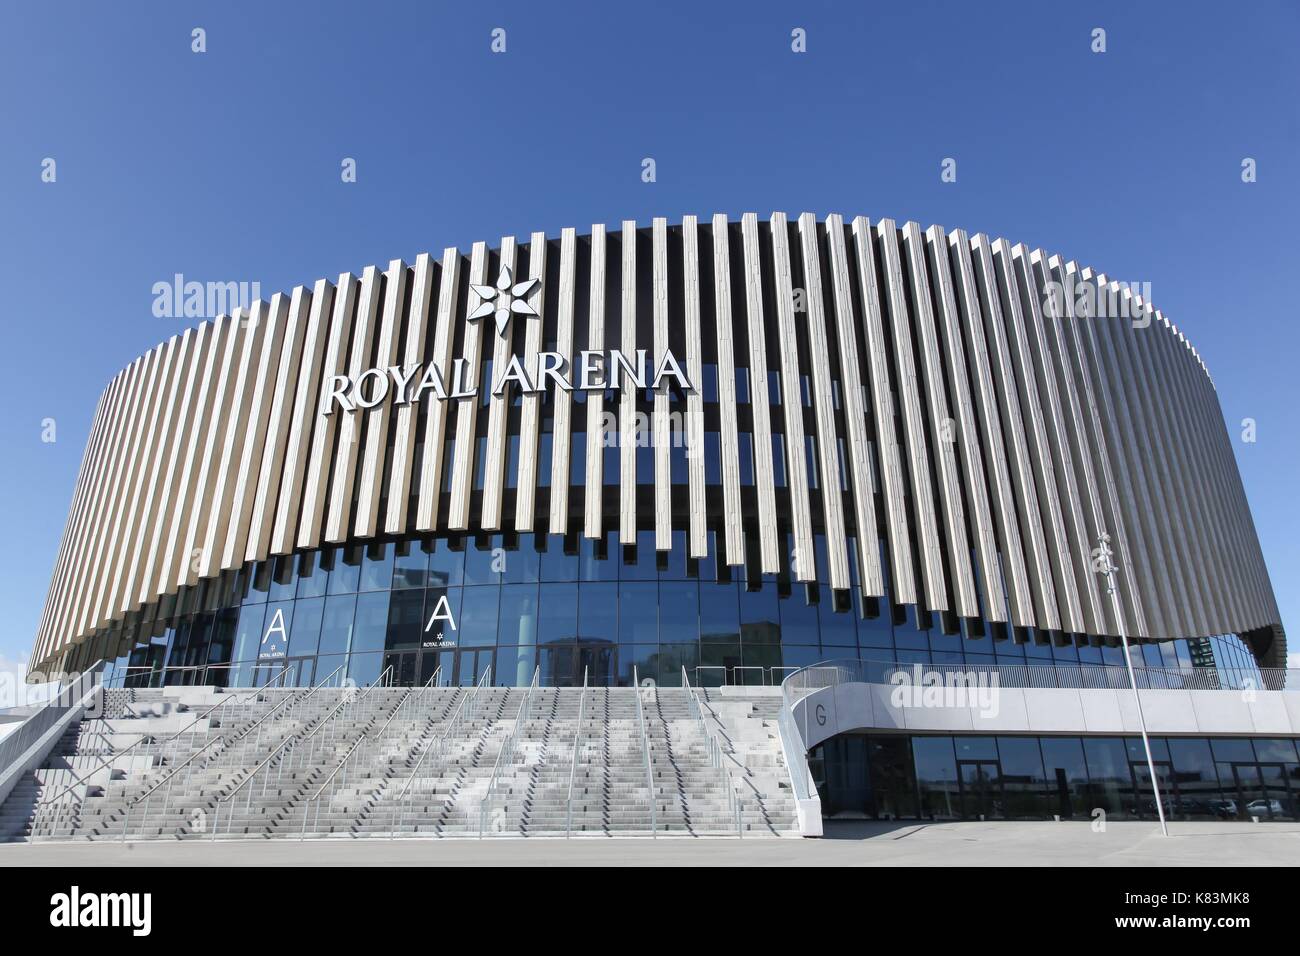 Copenhagen, Danimarca - 10 settembre 2017: il royal arena di copenhagen, Danimarca. il royal arena è un nuovo multi-uso indoor arena a Orestad ad Foto Stock